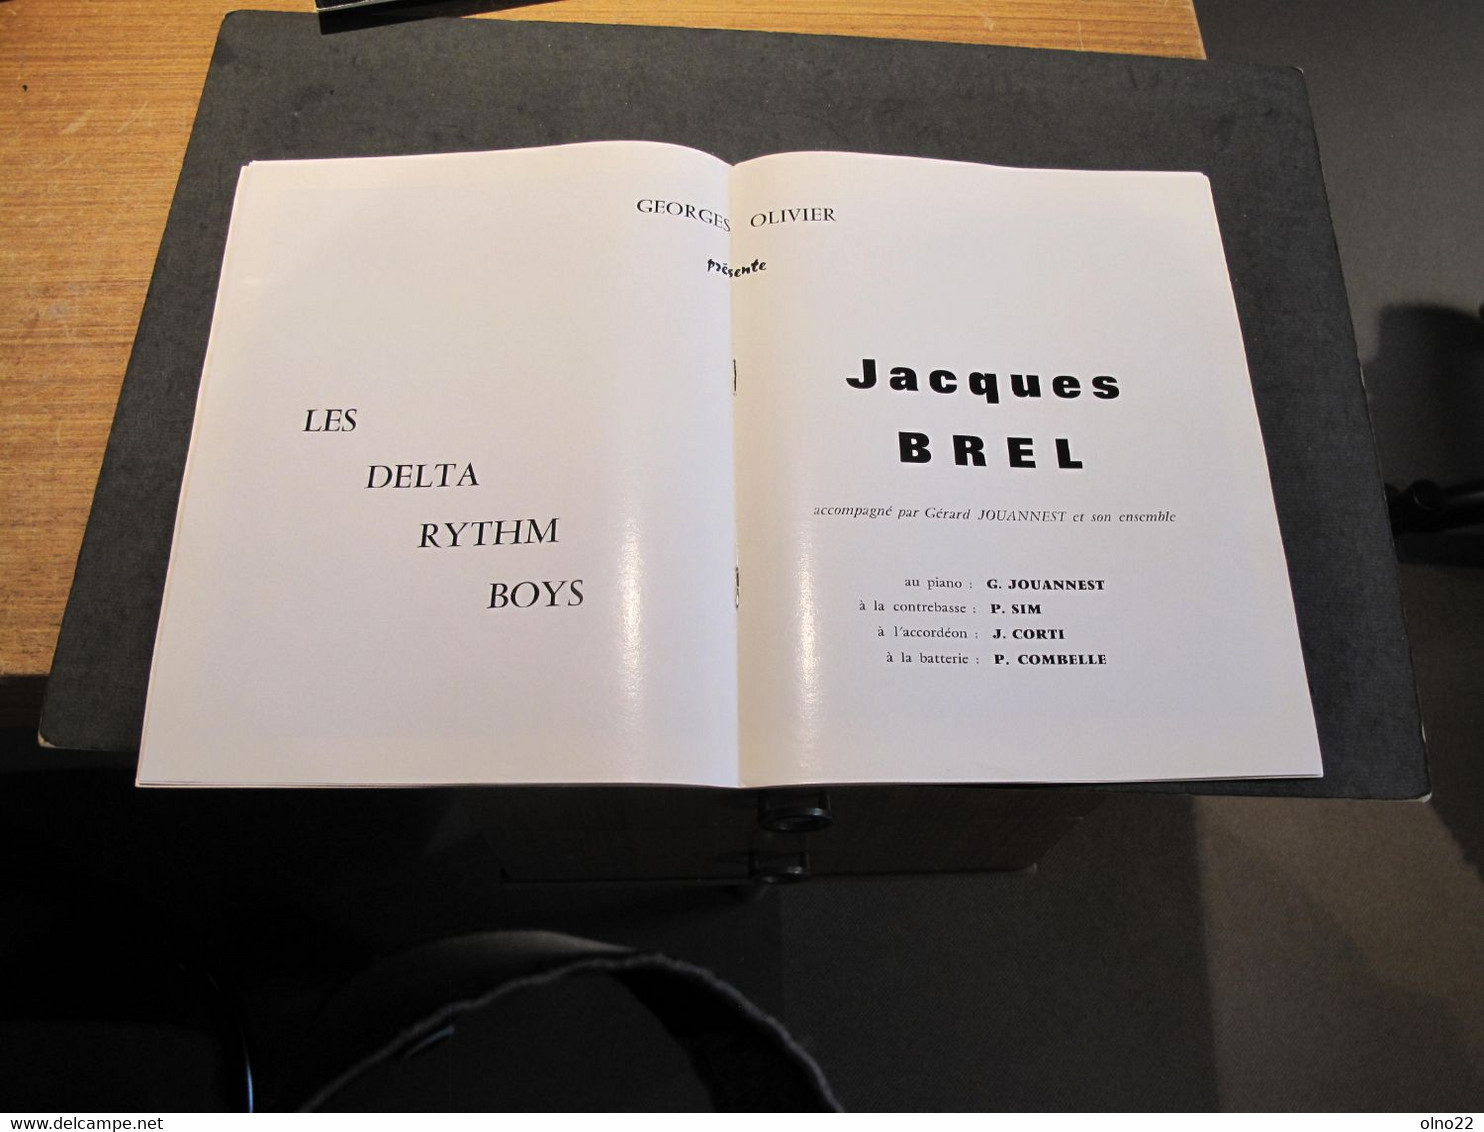 JACQUES BREL - TOURNEE GEORGES OLIVIER (1967 ?) - PREMIERE PARTIE LES DELTA RYTM BOYS - Programas